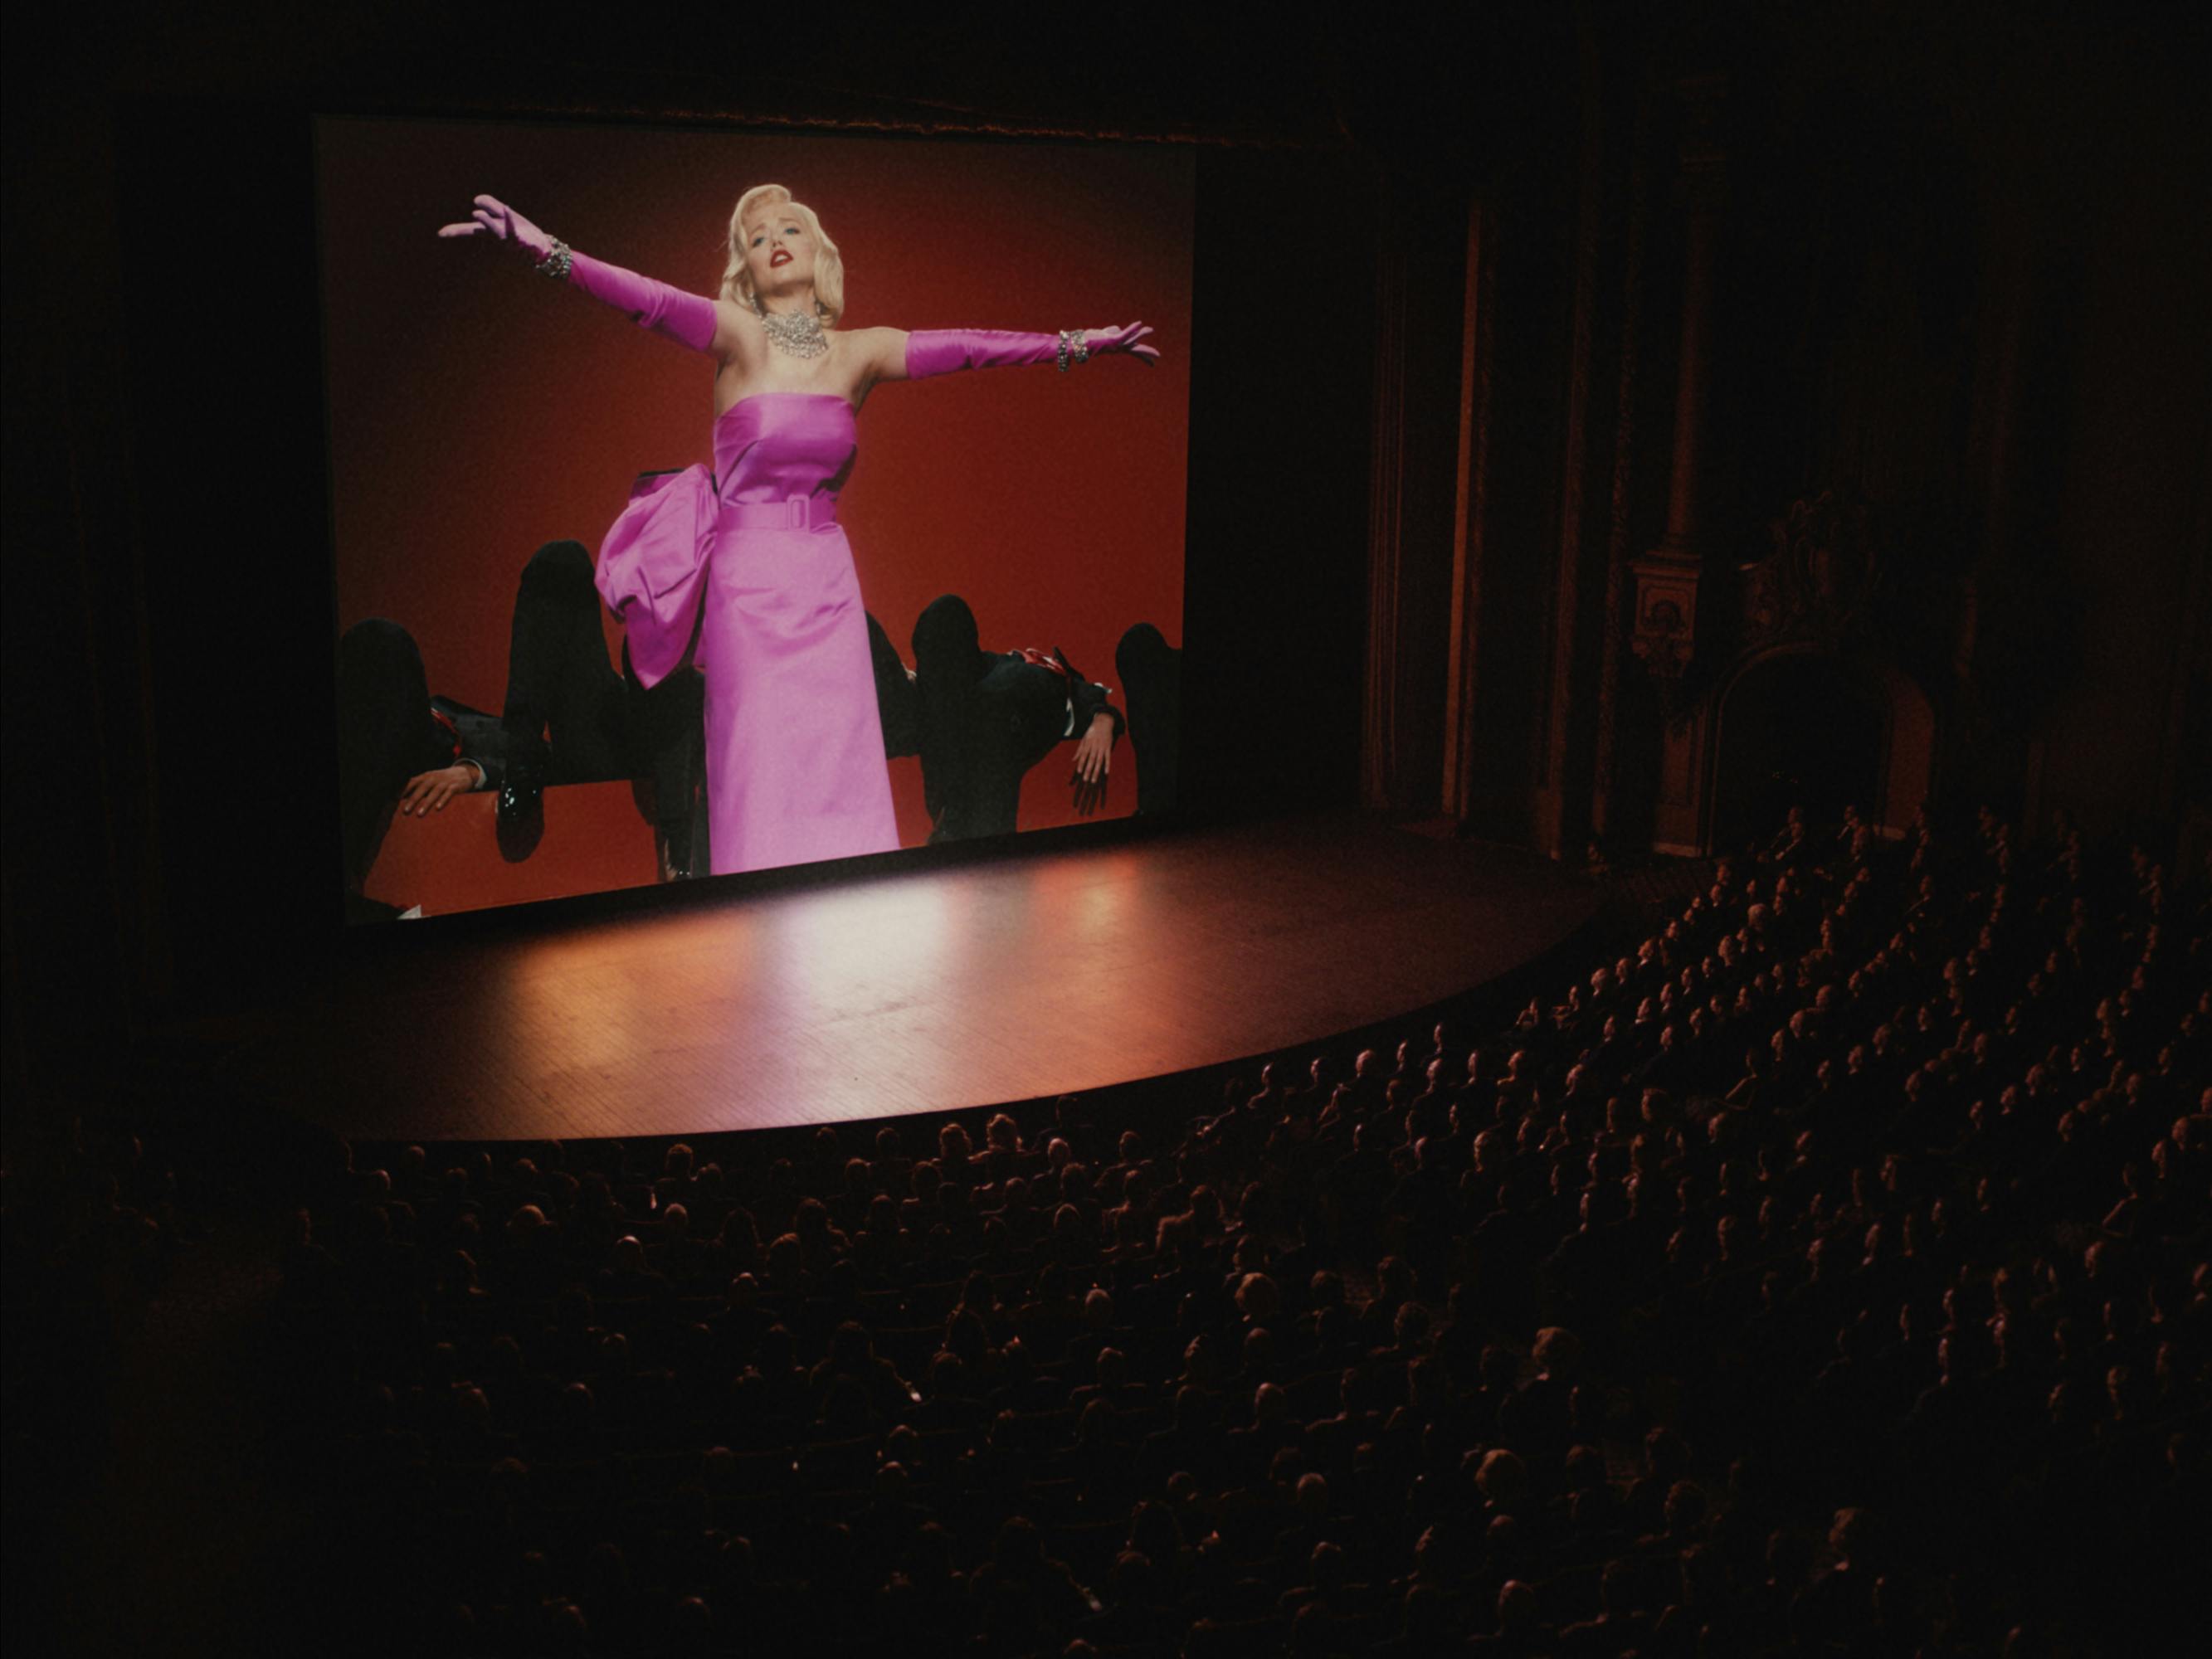 Marilyn Monroe (Ana de Armas) singings "Diamonds are a Girl's Best Friend" onscreen.